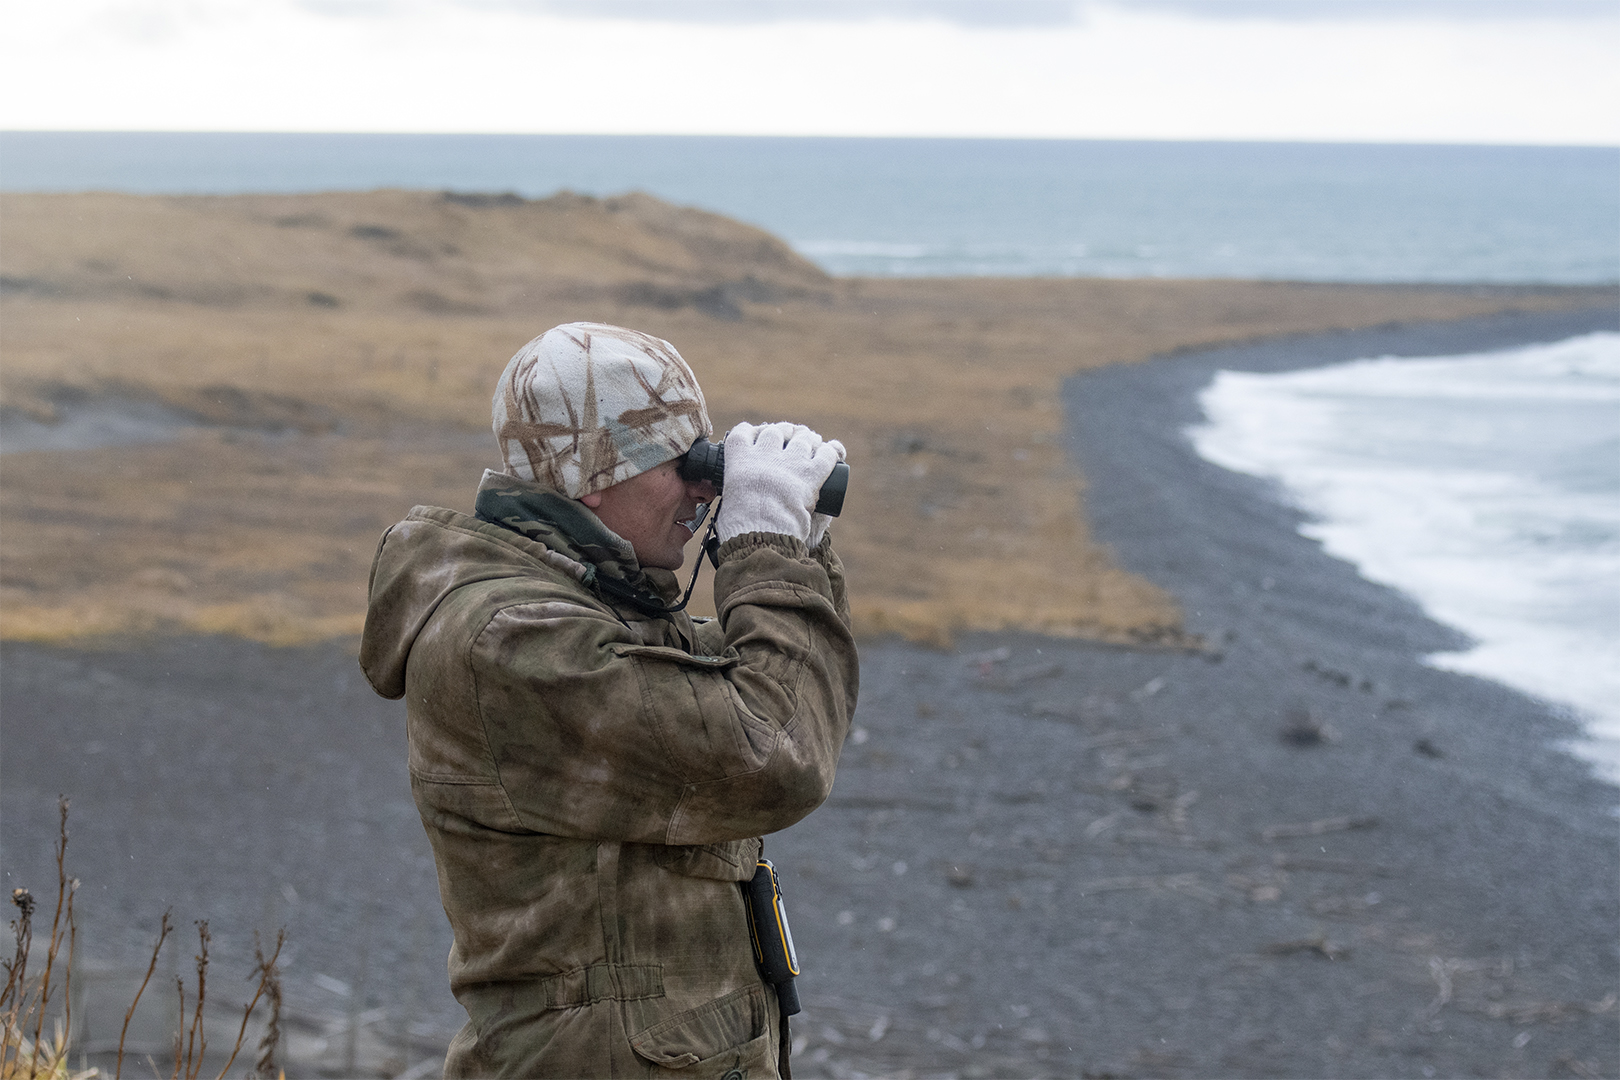 Rangers Examine 2,500 km of Bering Island in October